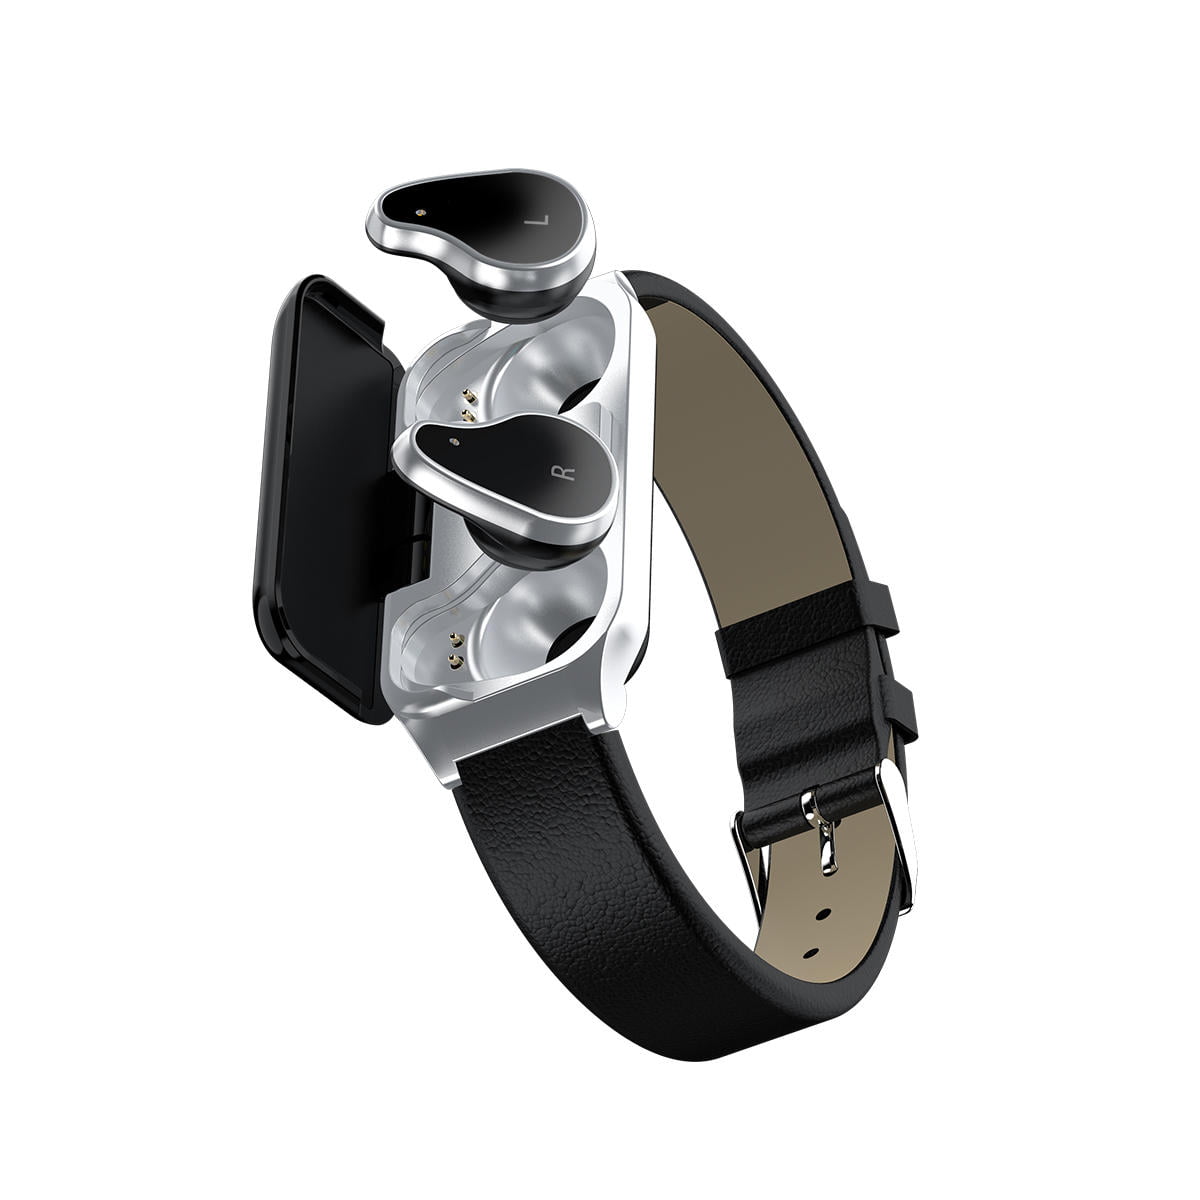 L818 smart watch bt5.0 intelligent noise reduction wireless earphone wristband (28)